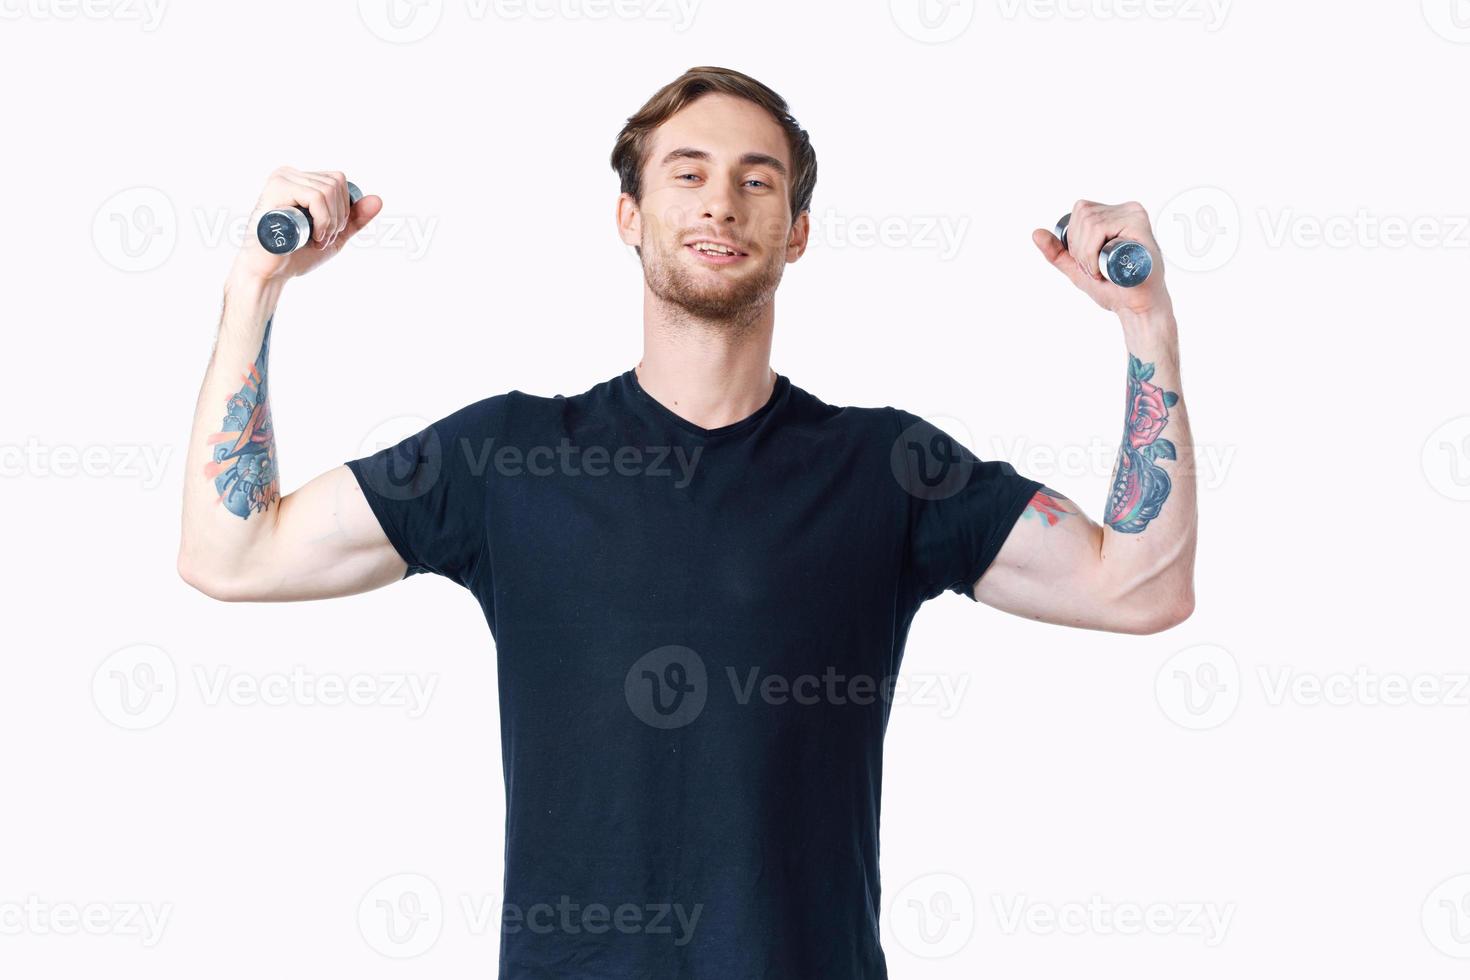 uomo con manubri muscoli muscoli bodybuilder fitness e tatuaggio su il suo braccio foto